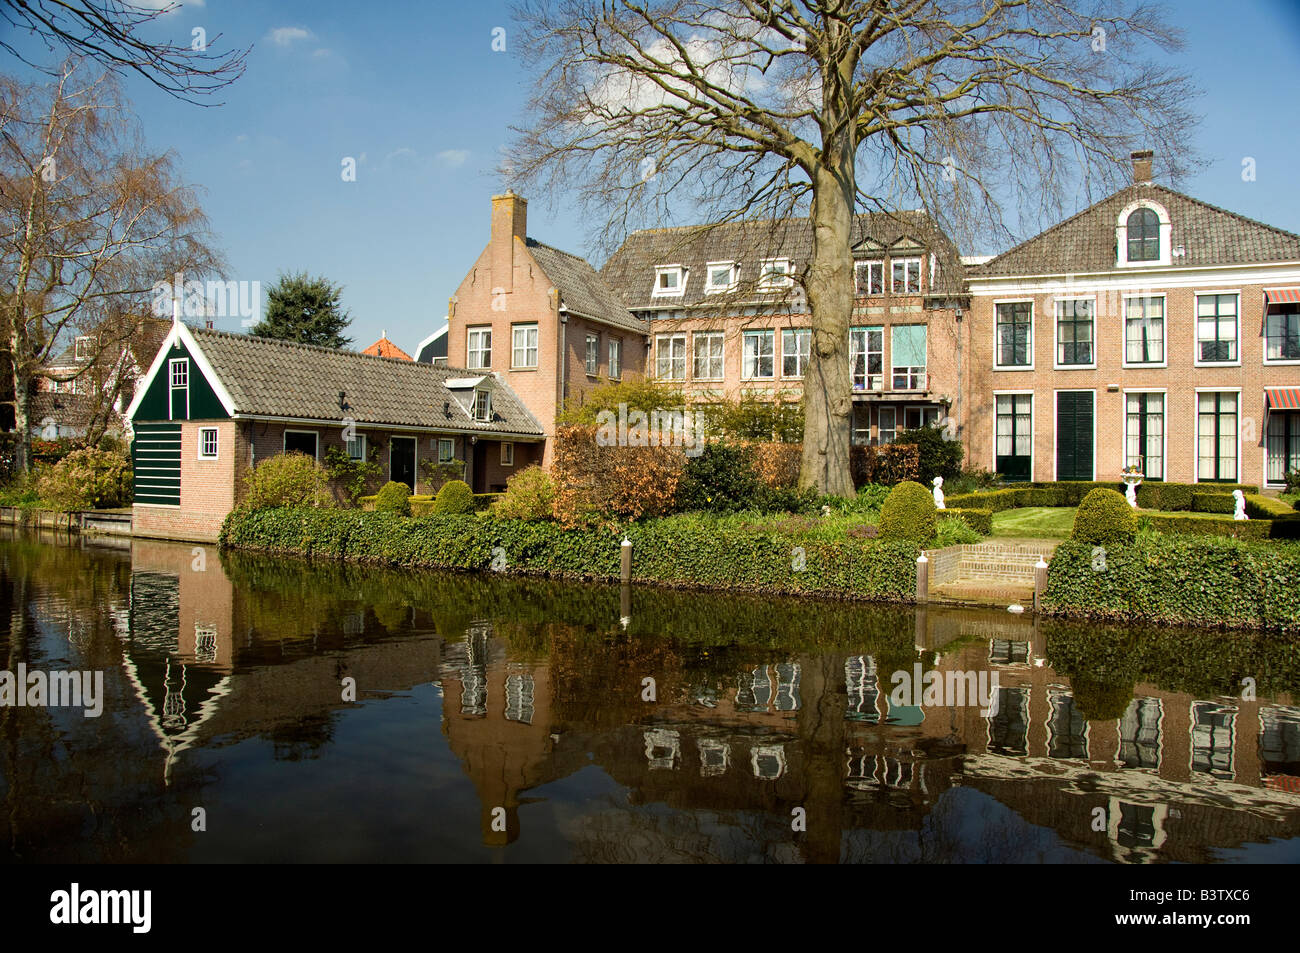 Europa, Paesi Bassi (aka Holland). Formaggio medievale producendo città di Edam. Tipiche abitazioni lungo i canali a Edam. Foto Stock